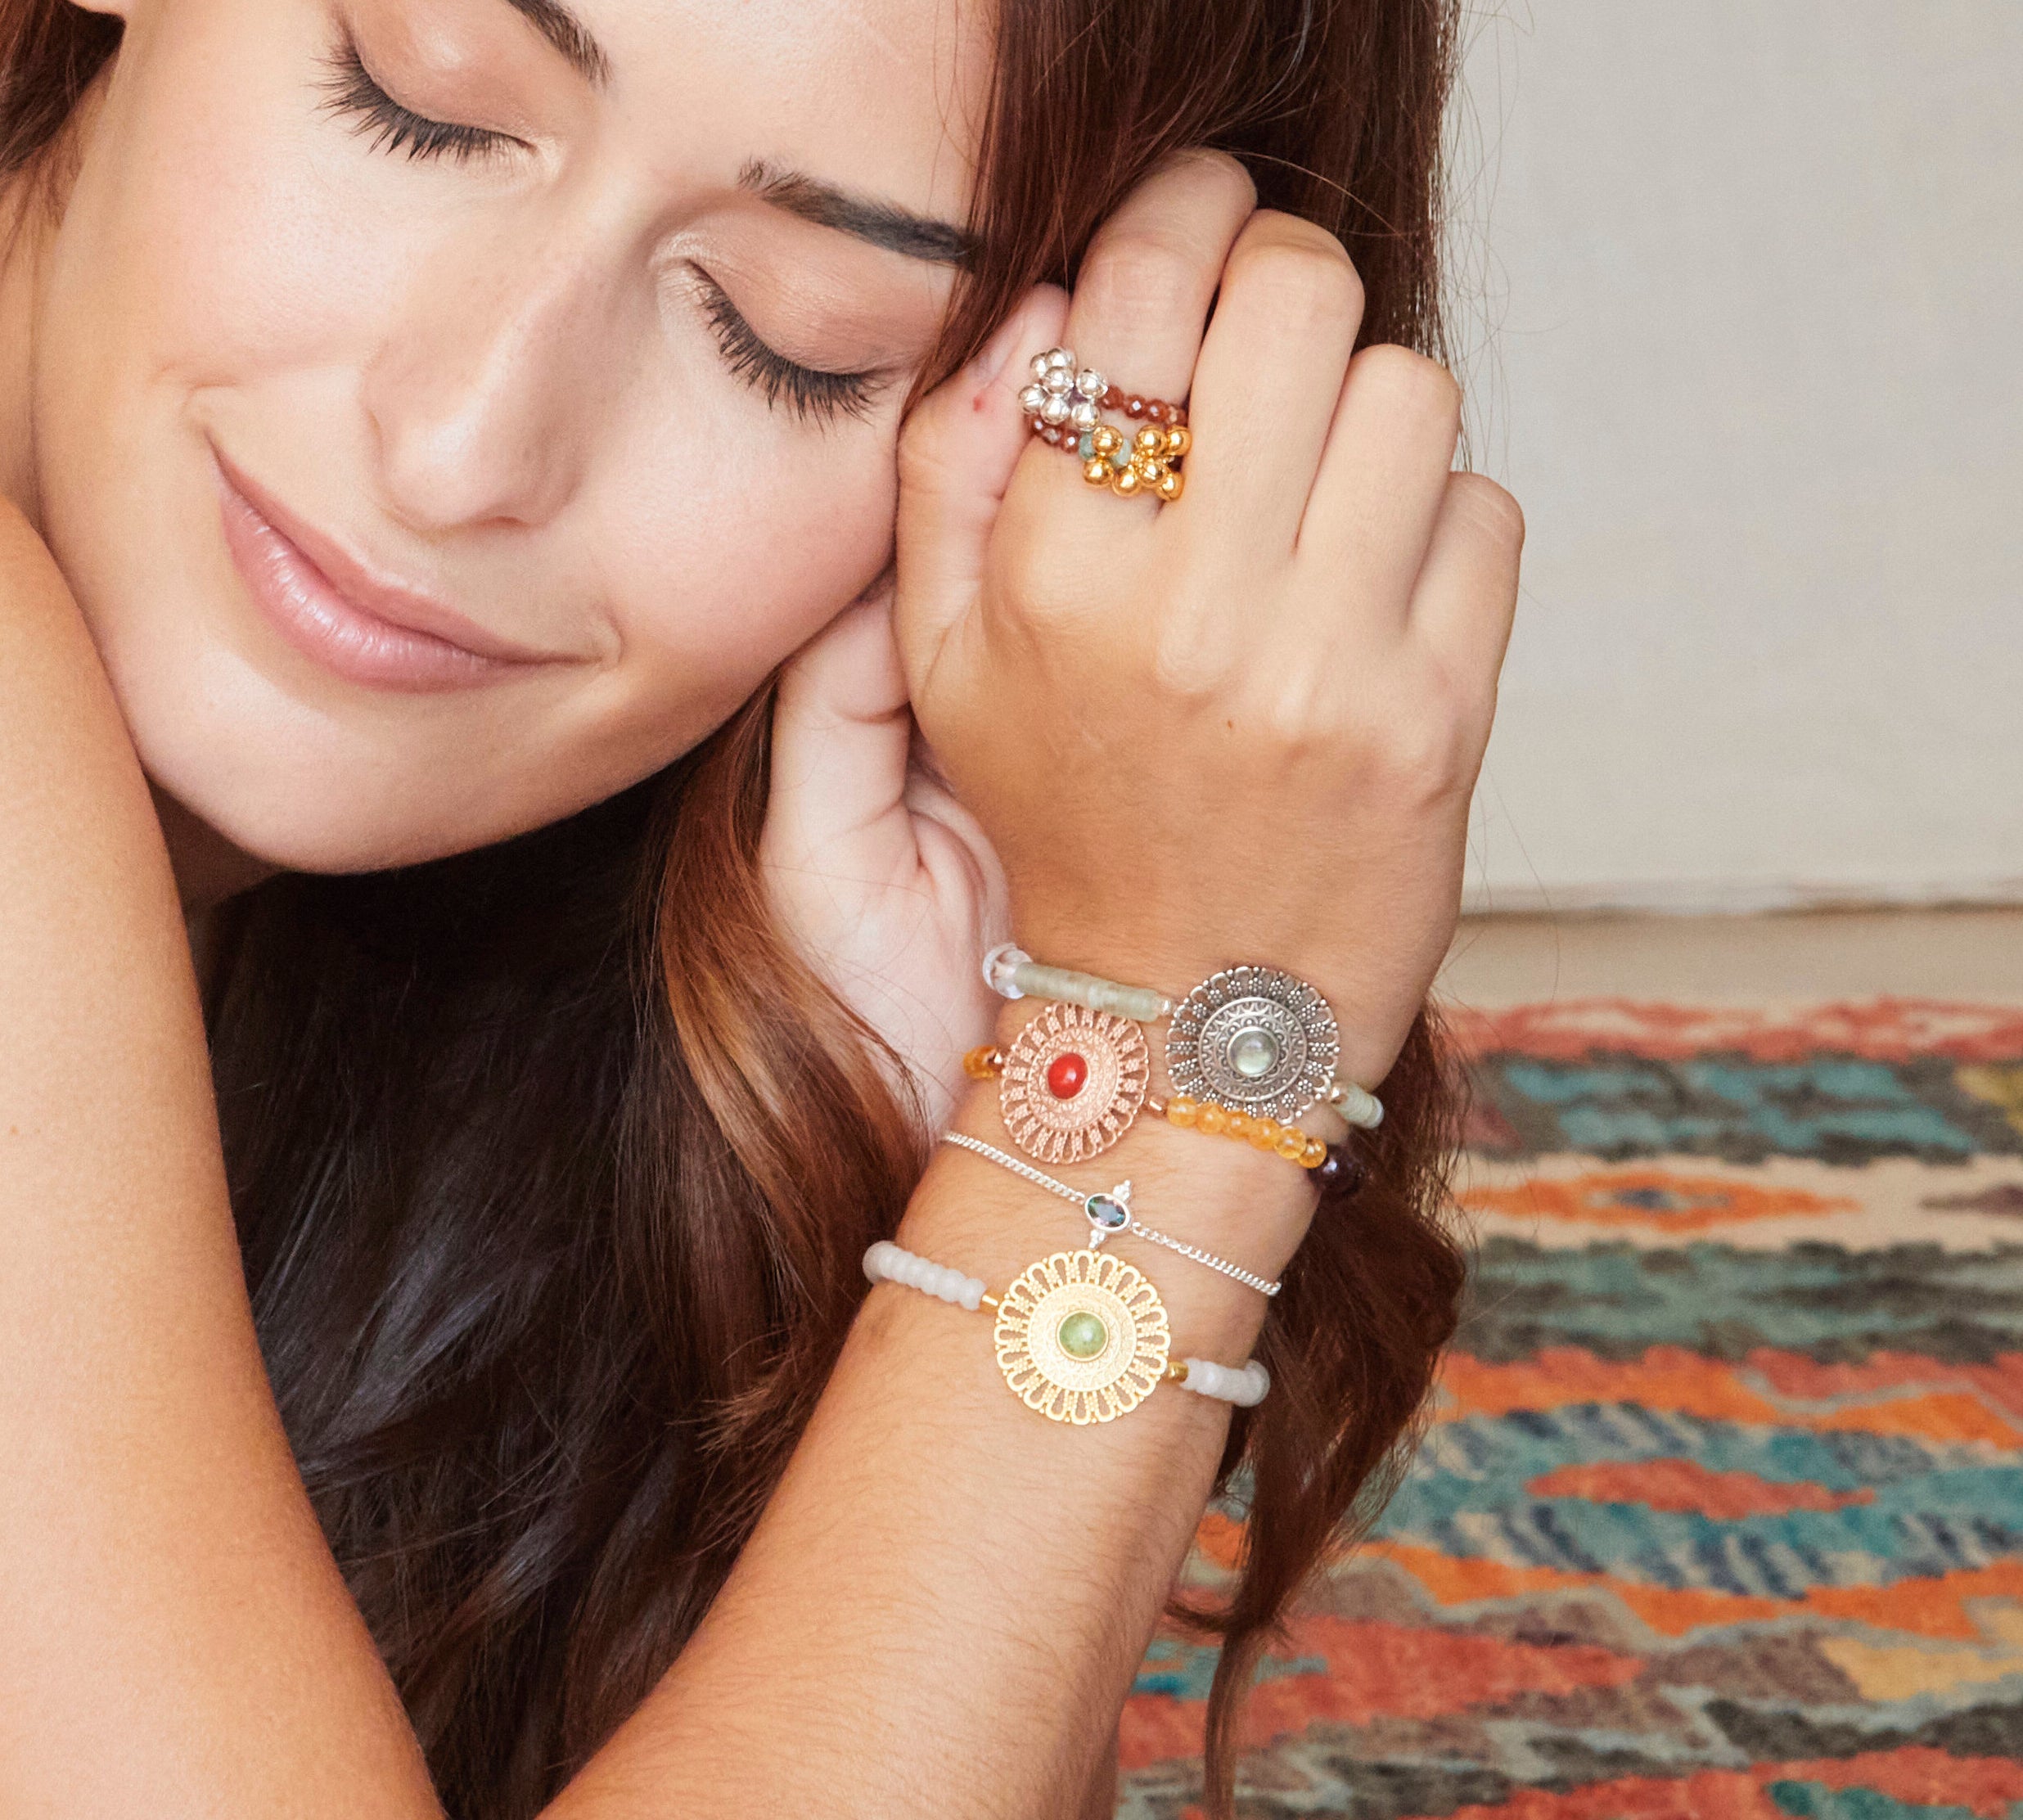 Mandala Armband aus heilenden Edelsteinen für Freundschaft.